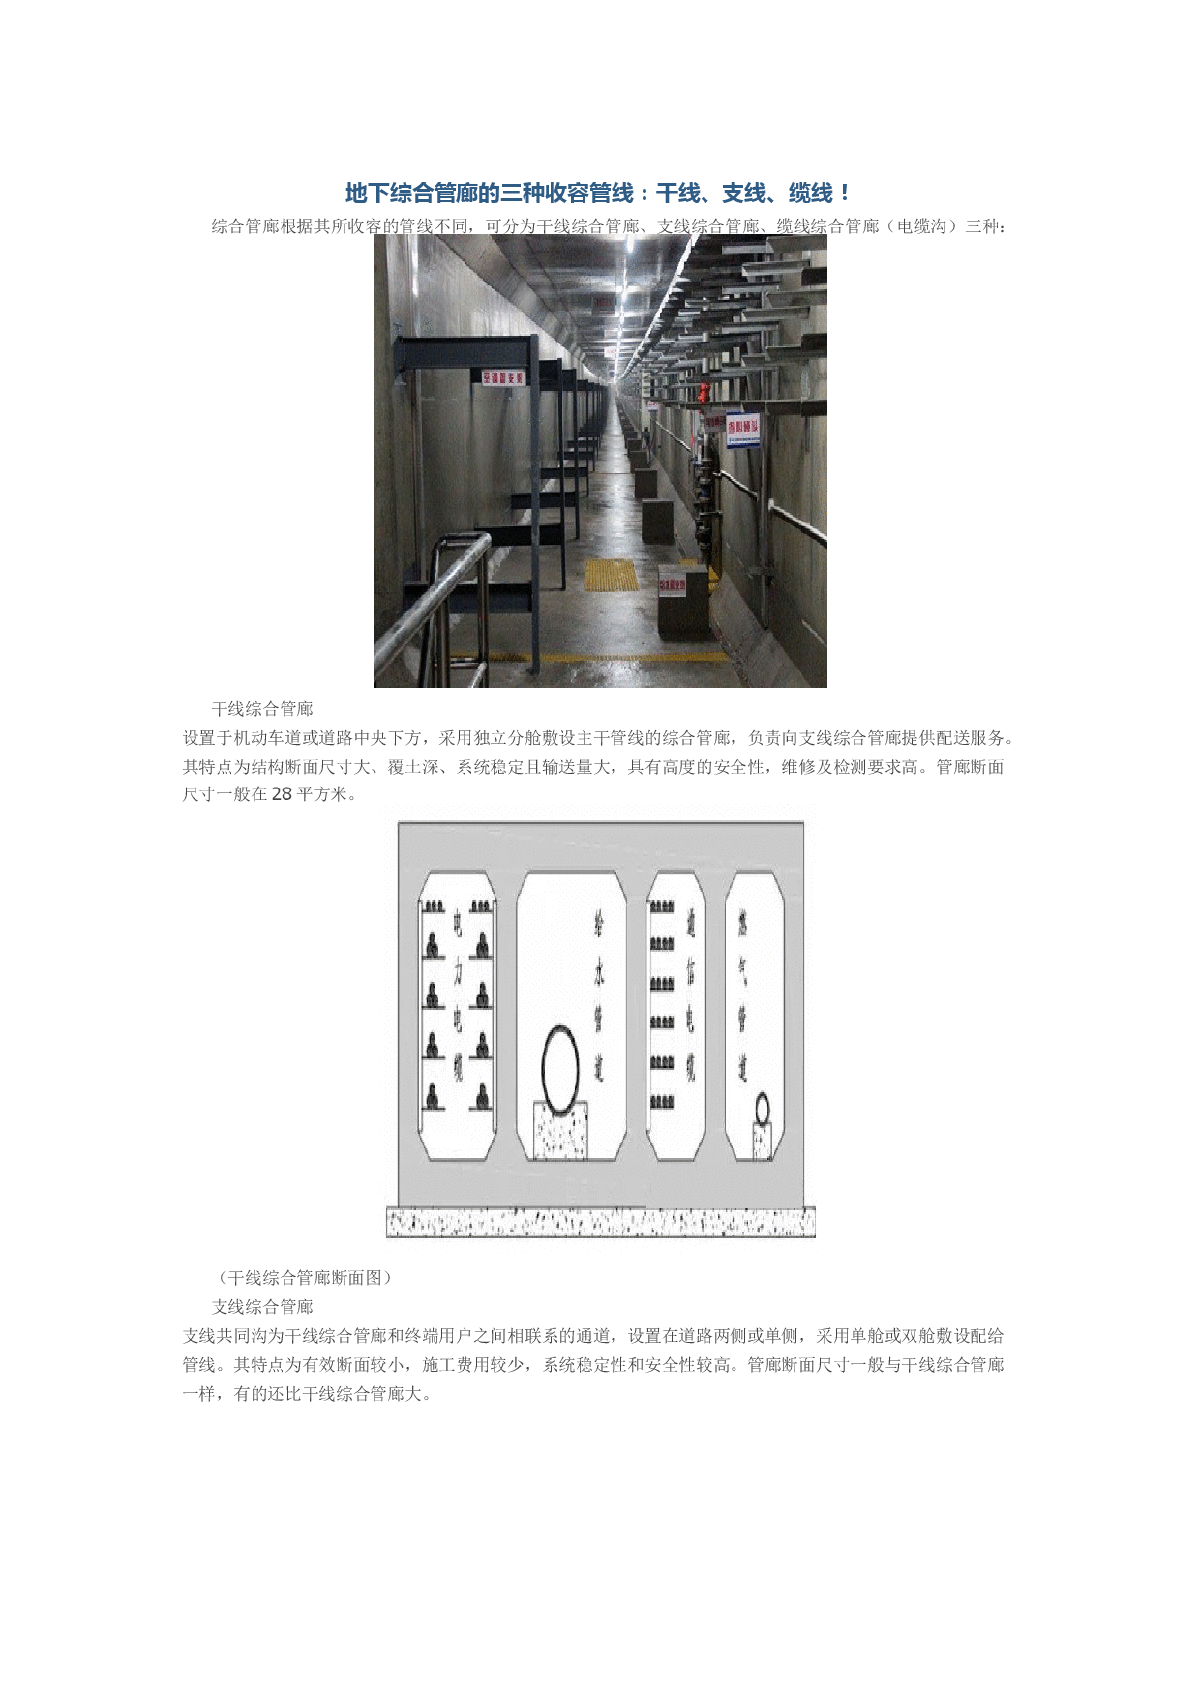 地下综合管廊的三种收容管线：干线、支线、缆线-图一